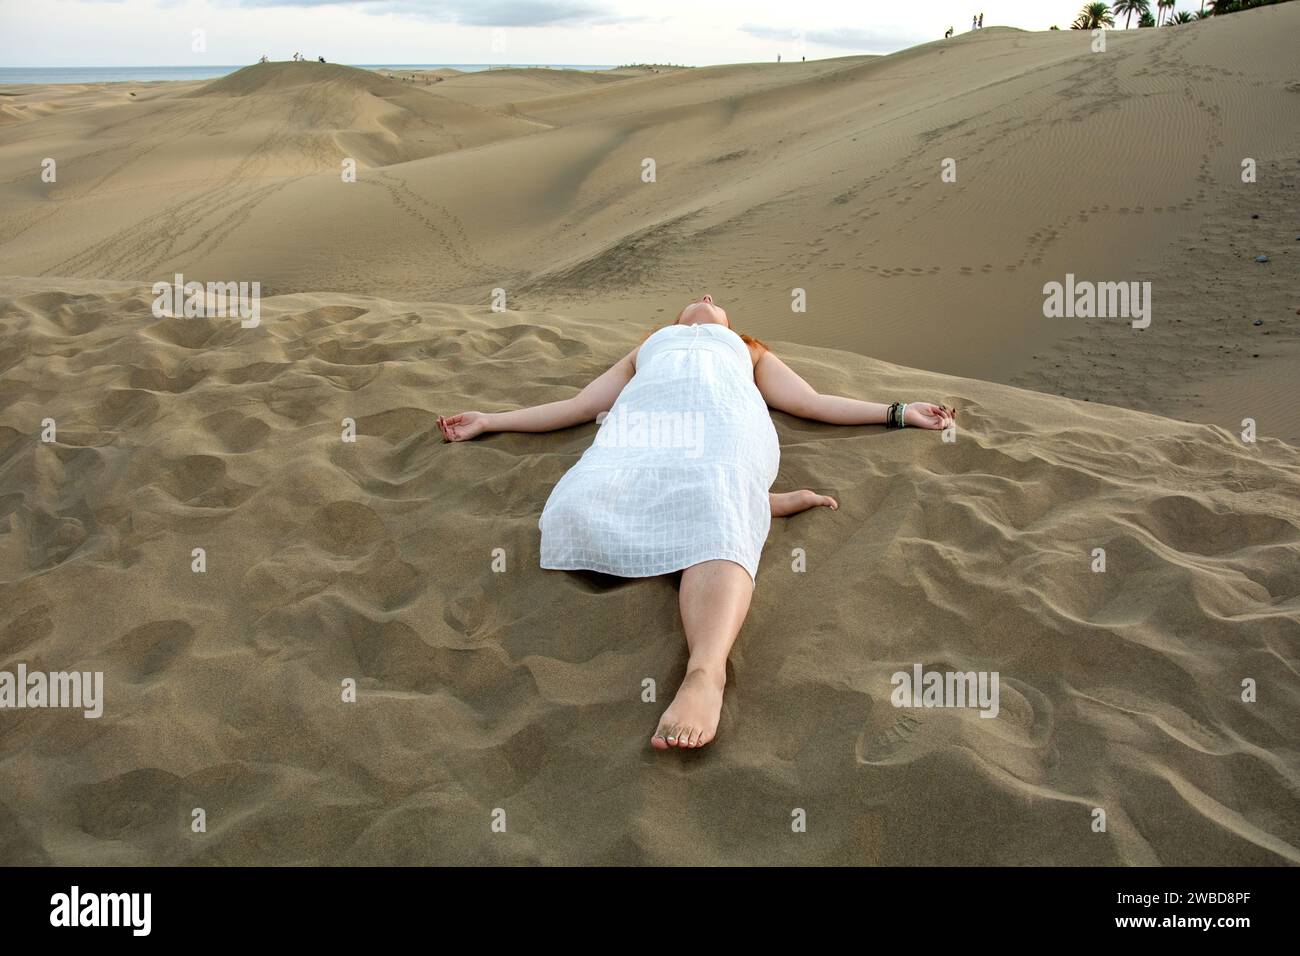 Una giovane ragazza giace tra le dune di sabbia con un vestito bianco Foto Stock